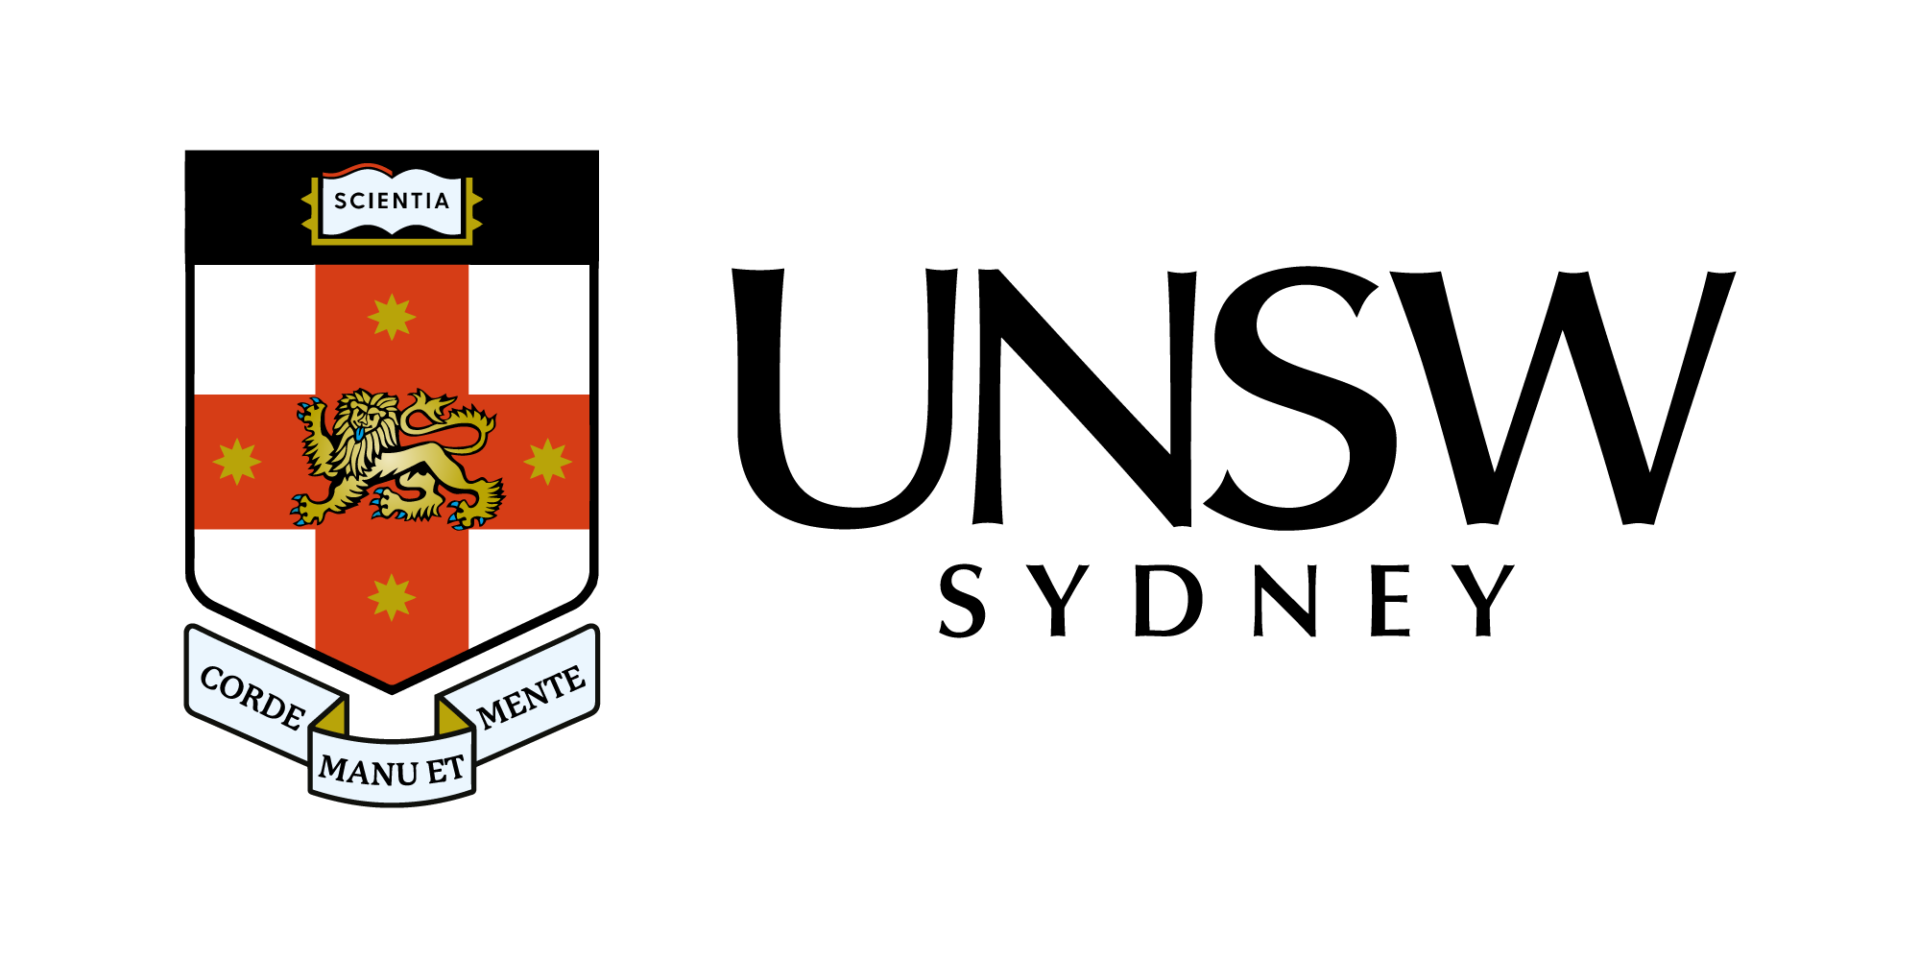 Significato del logo UNSW Sidney, PNG e AI vettoriale - Mrvian